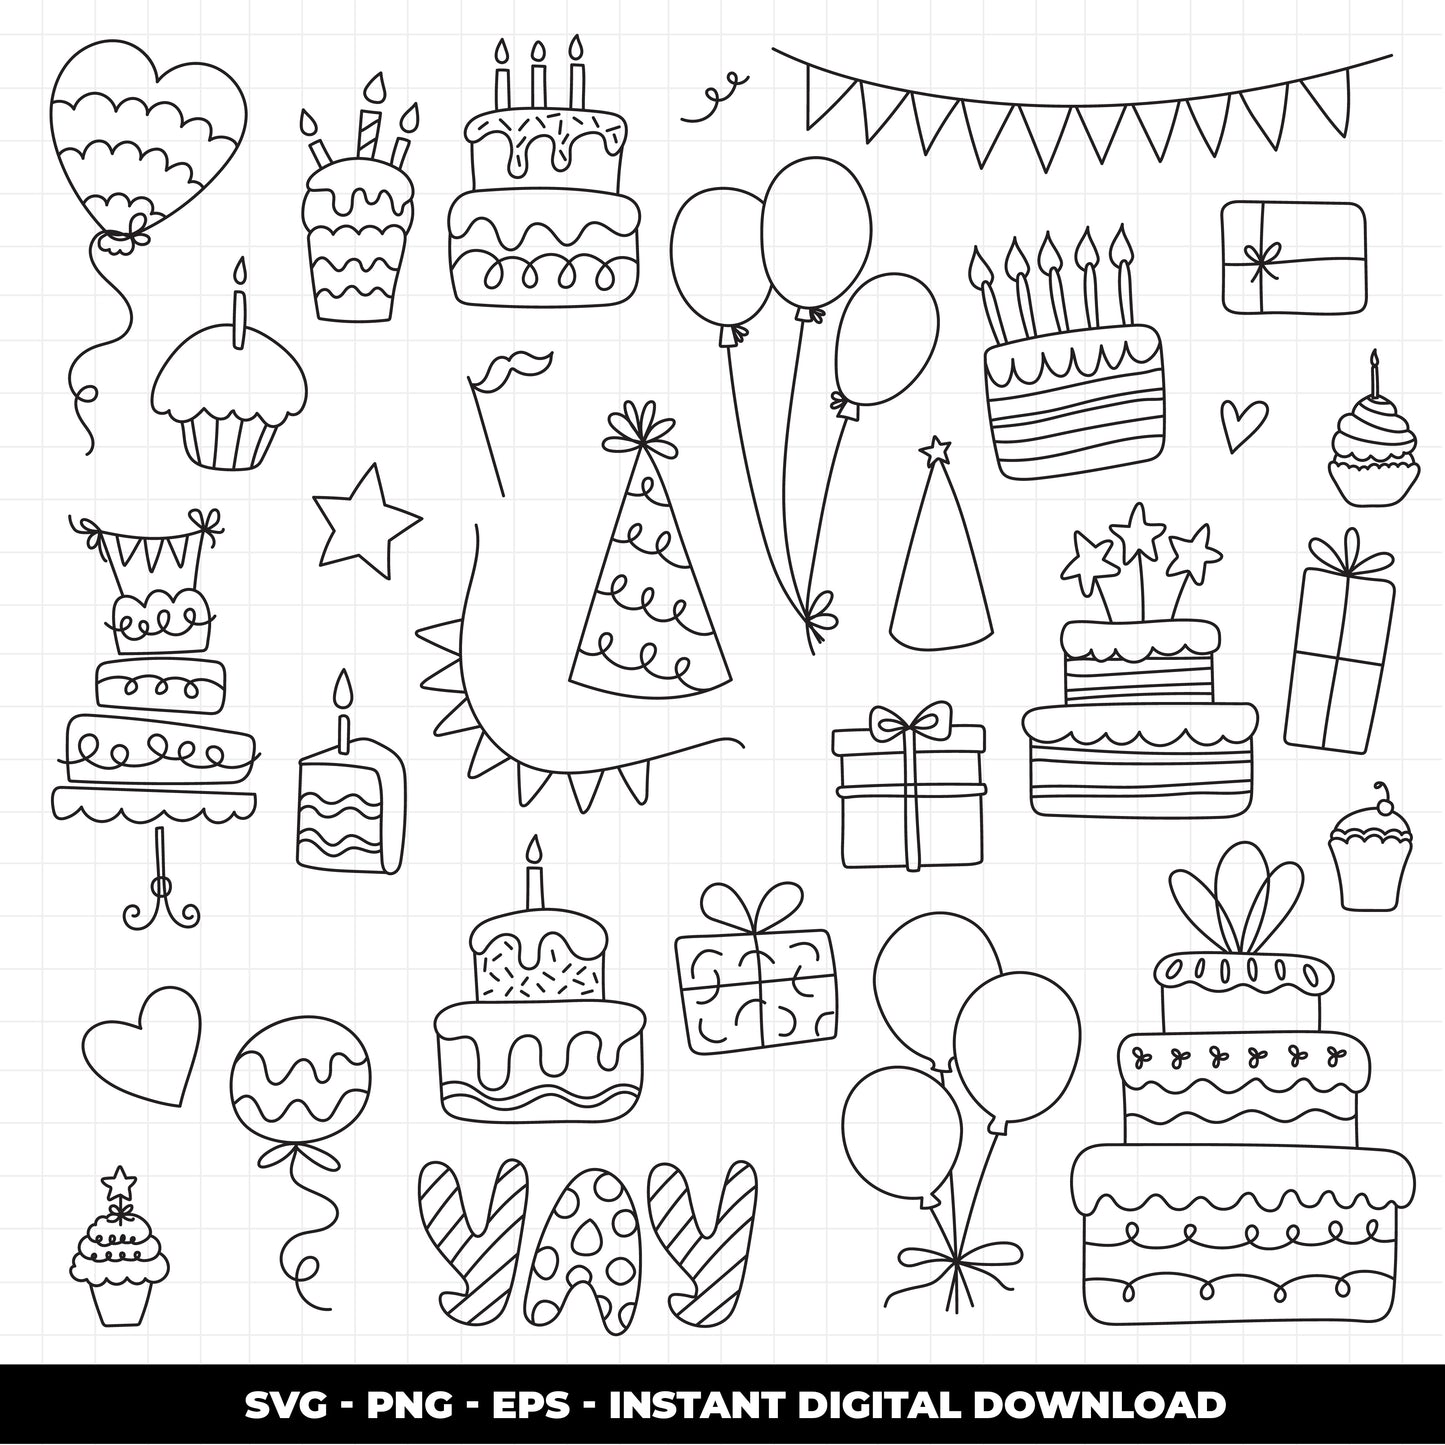 COD929 Happy birthday svg, birthday clipart, cake svg, birthday vector, party svg